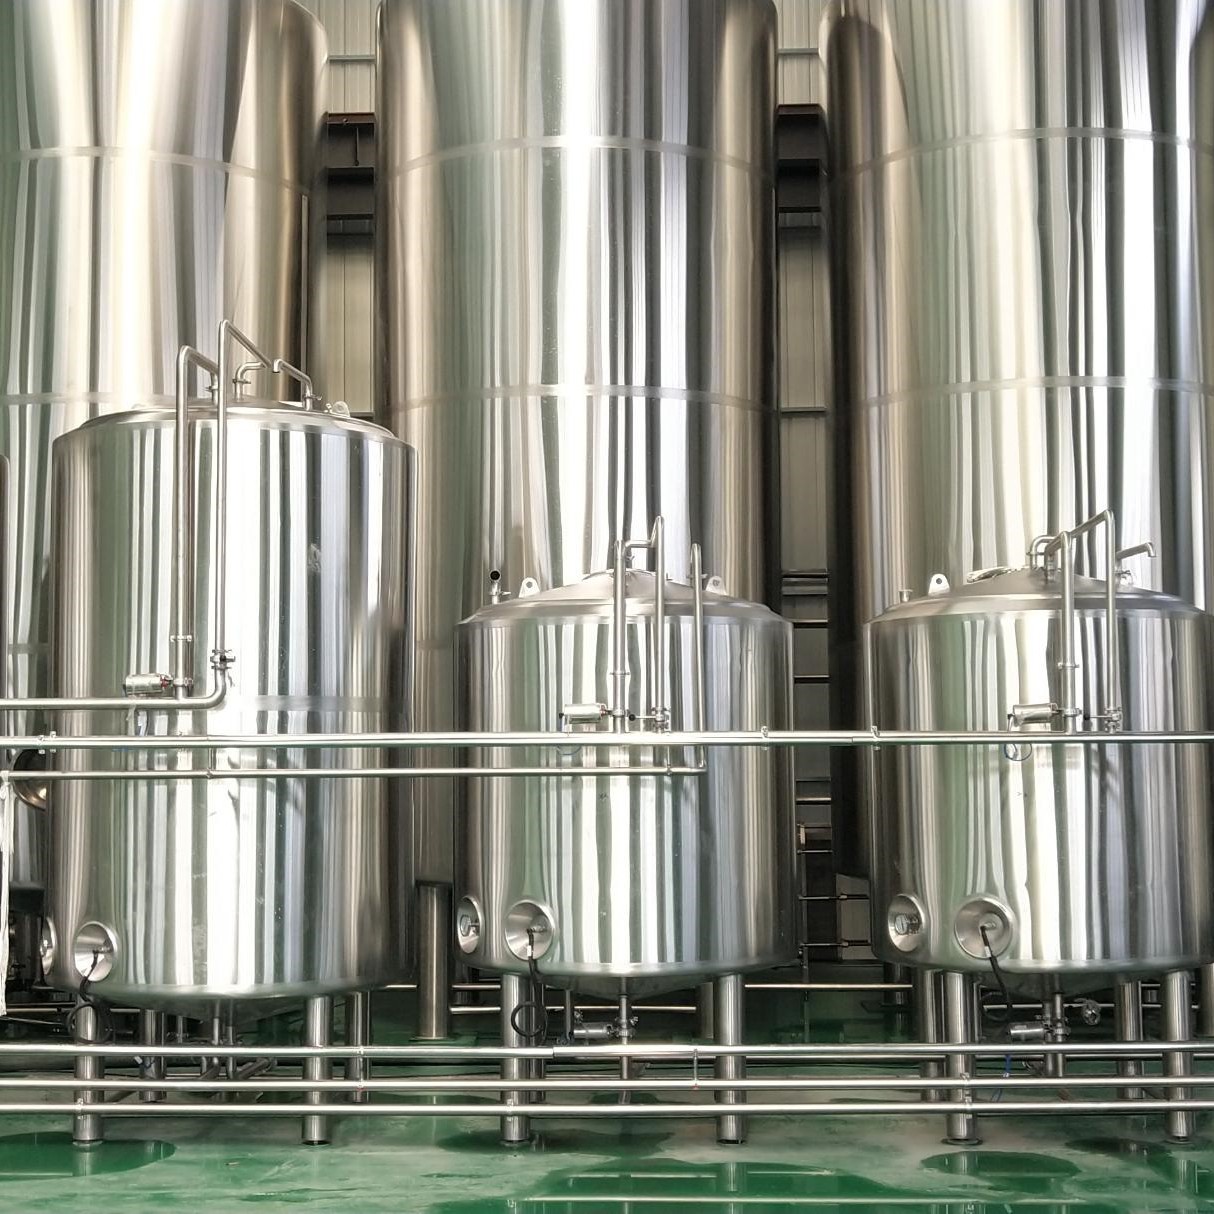 stainless steel beer brewing fermentation tanks.jpg